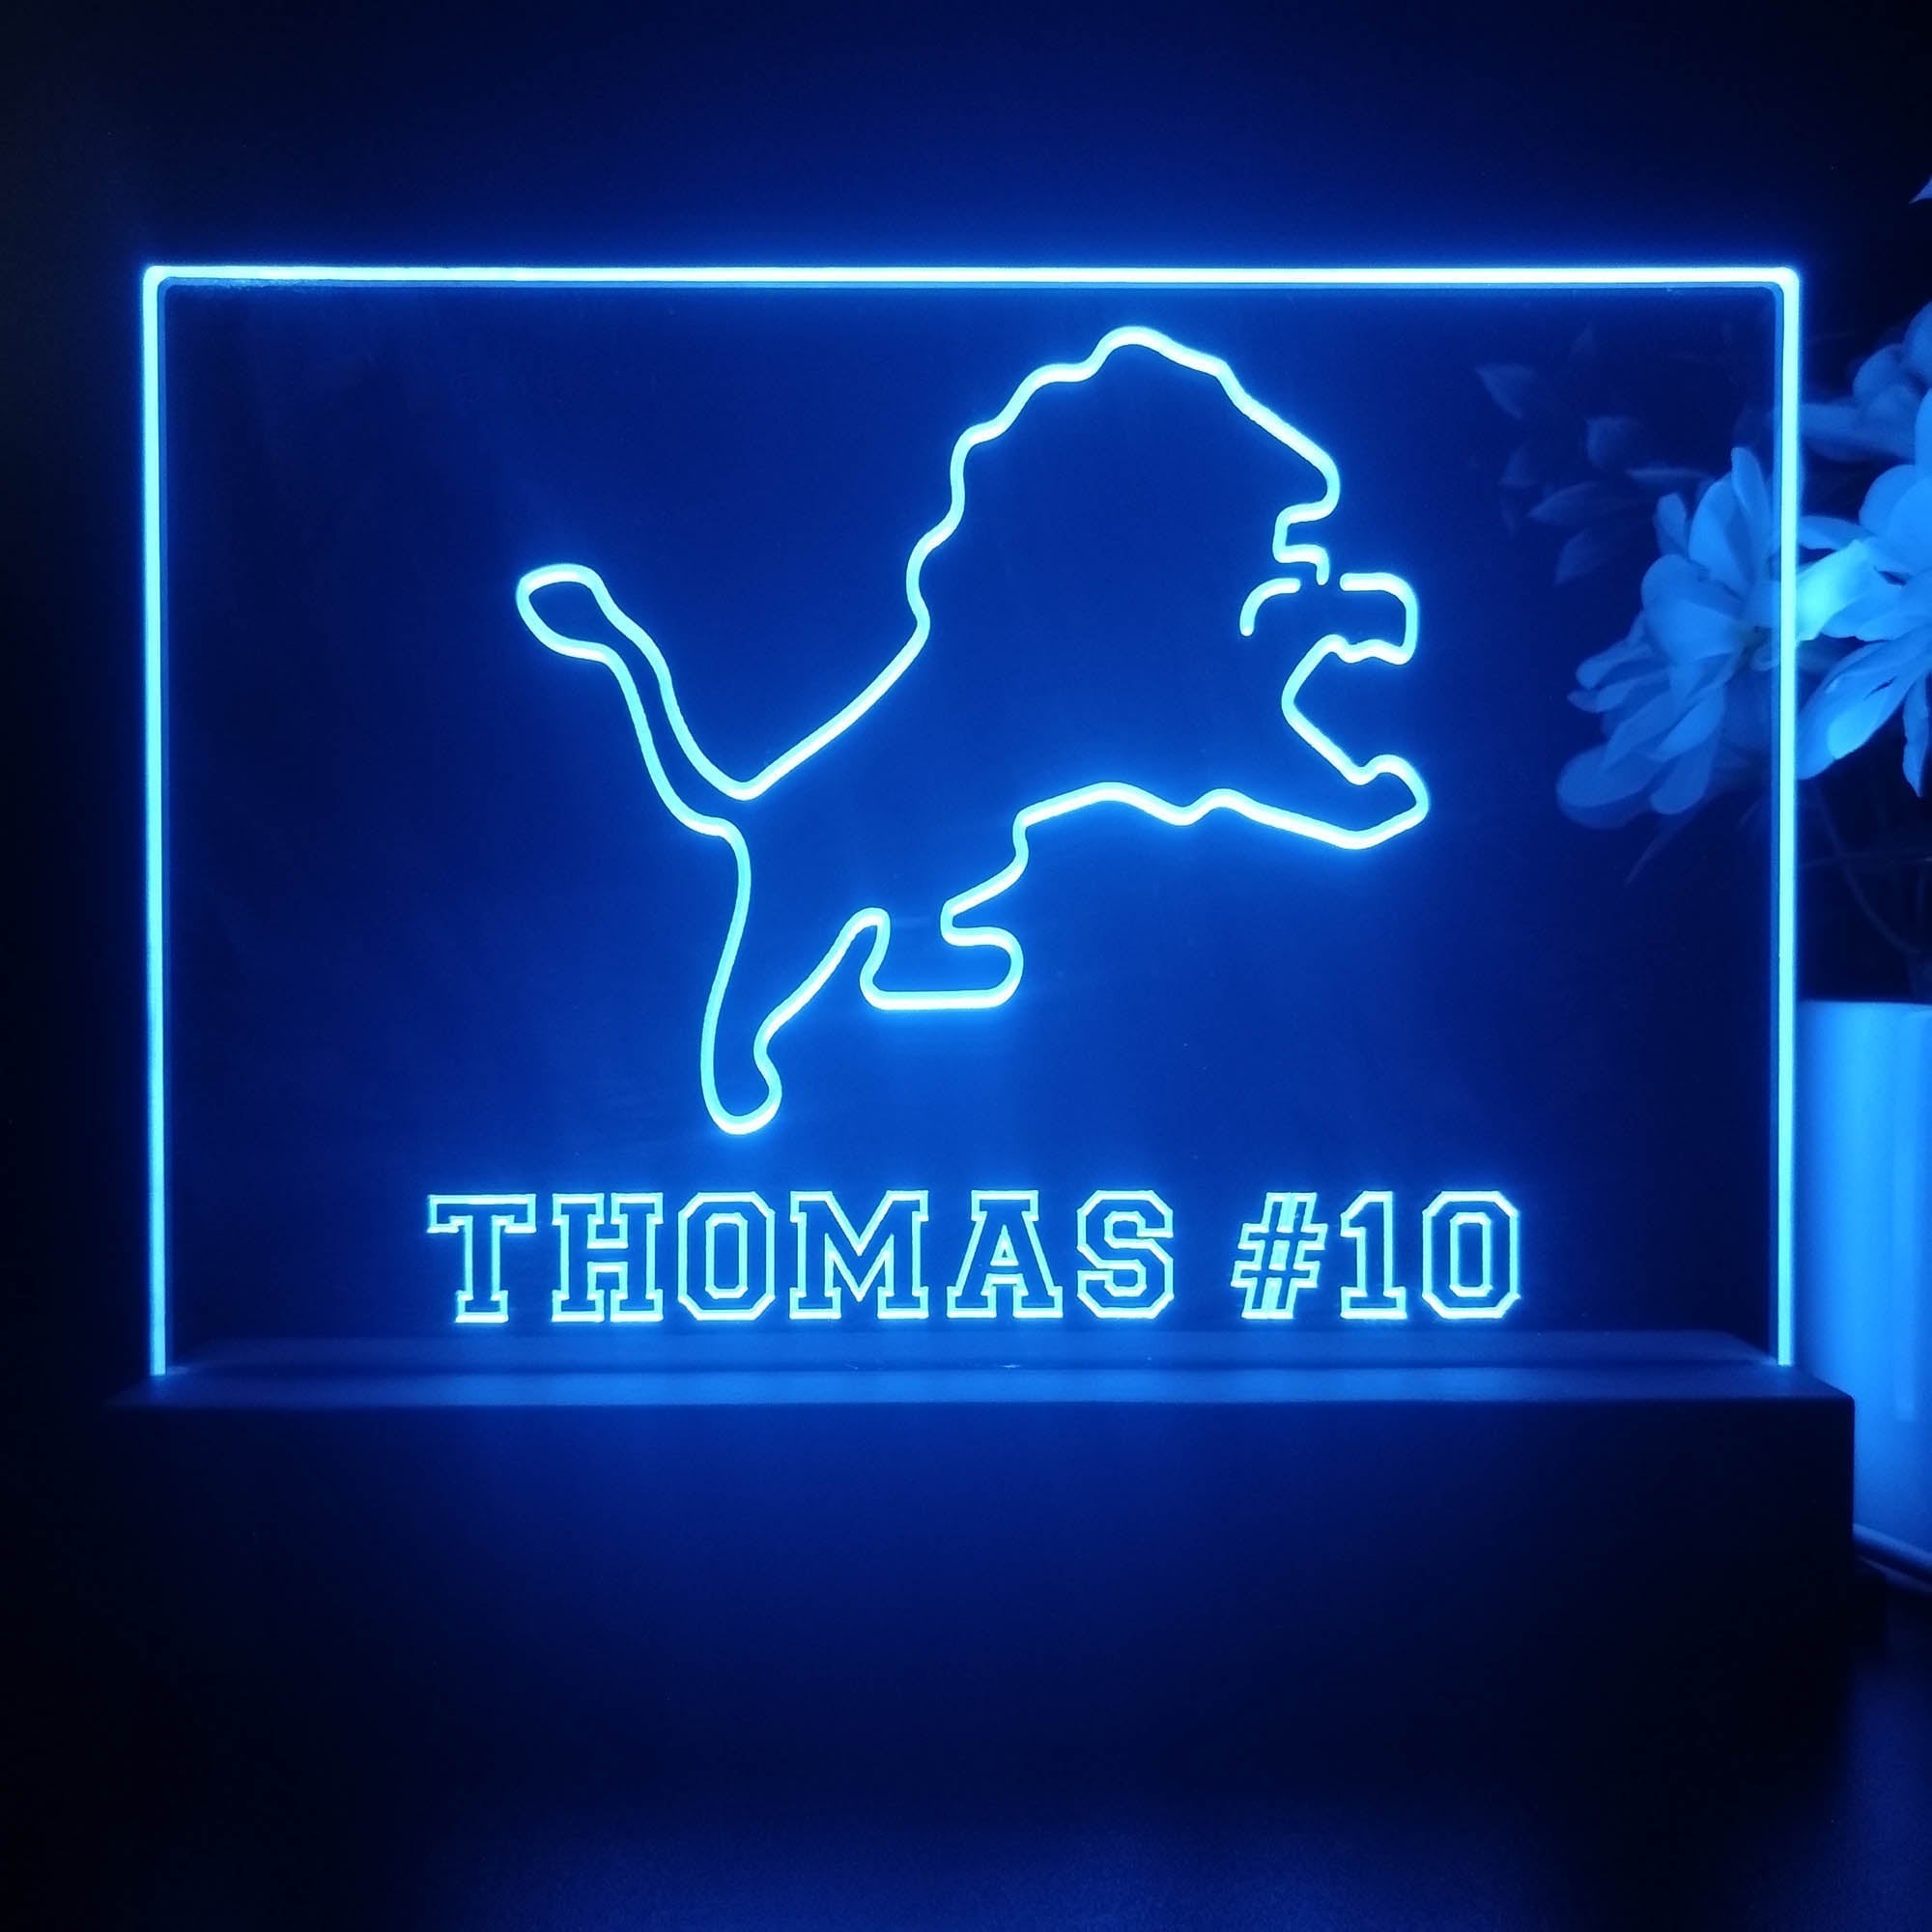 Personalized Detroit Lions Souvenir Neon LED Night Light Sign